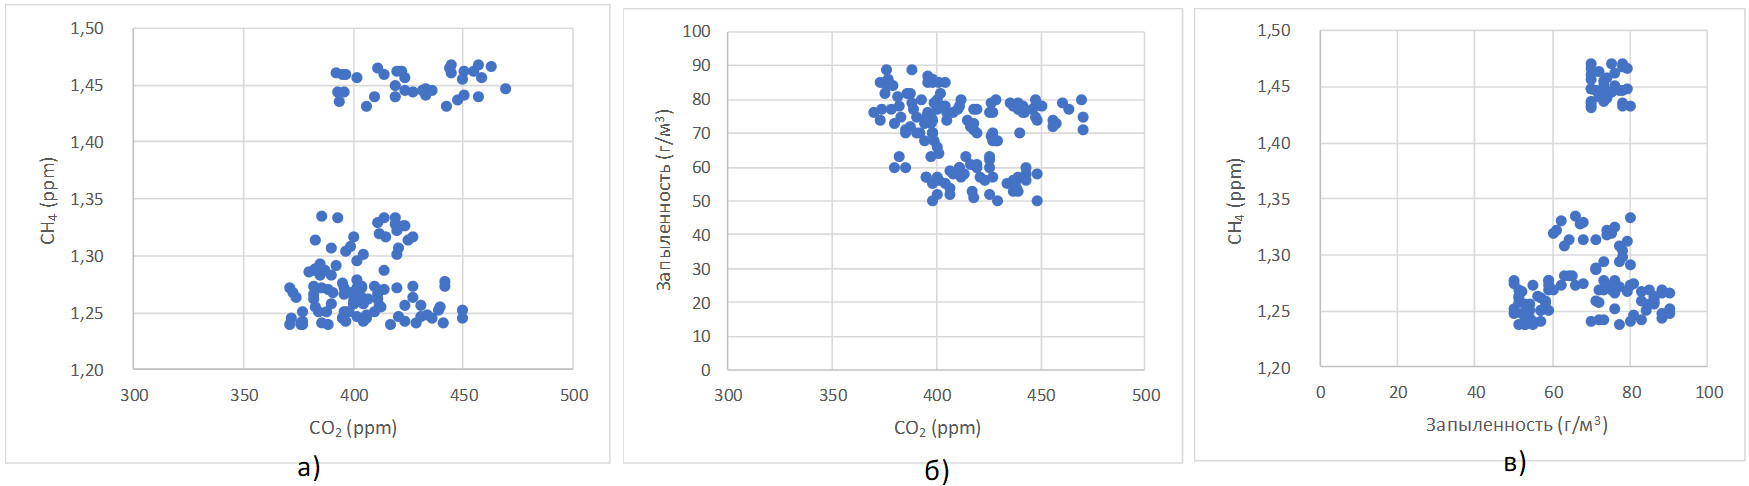 Диаграммы корреляций значений CO2, CH4 и запыленности